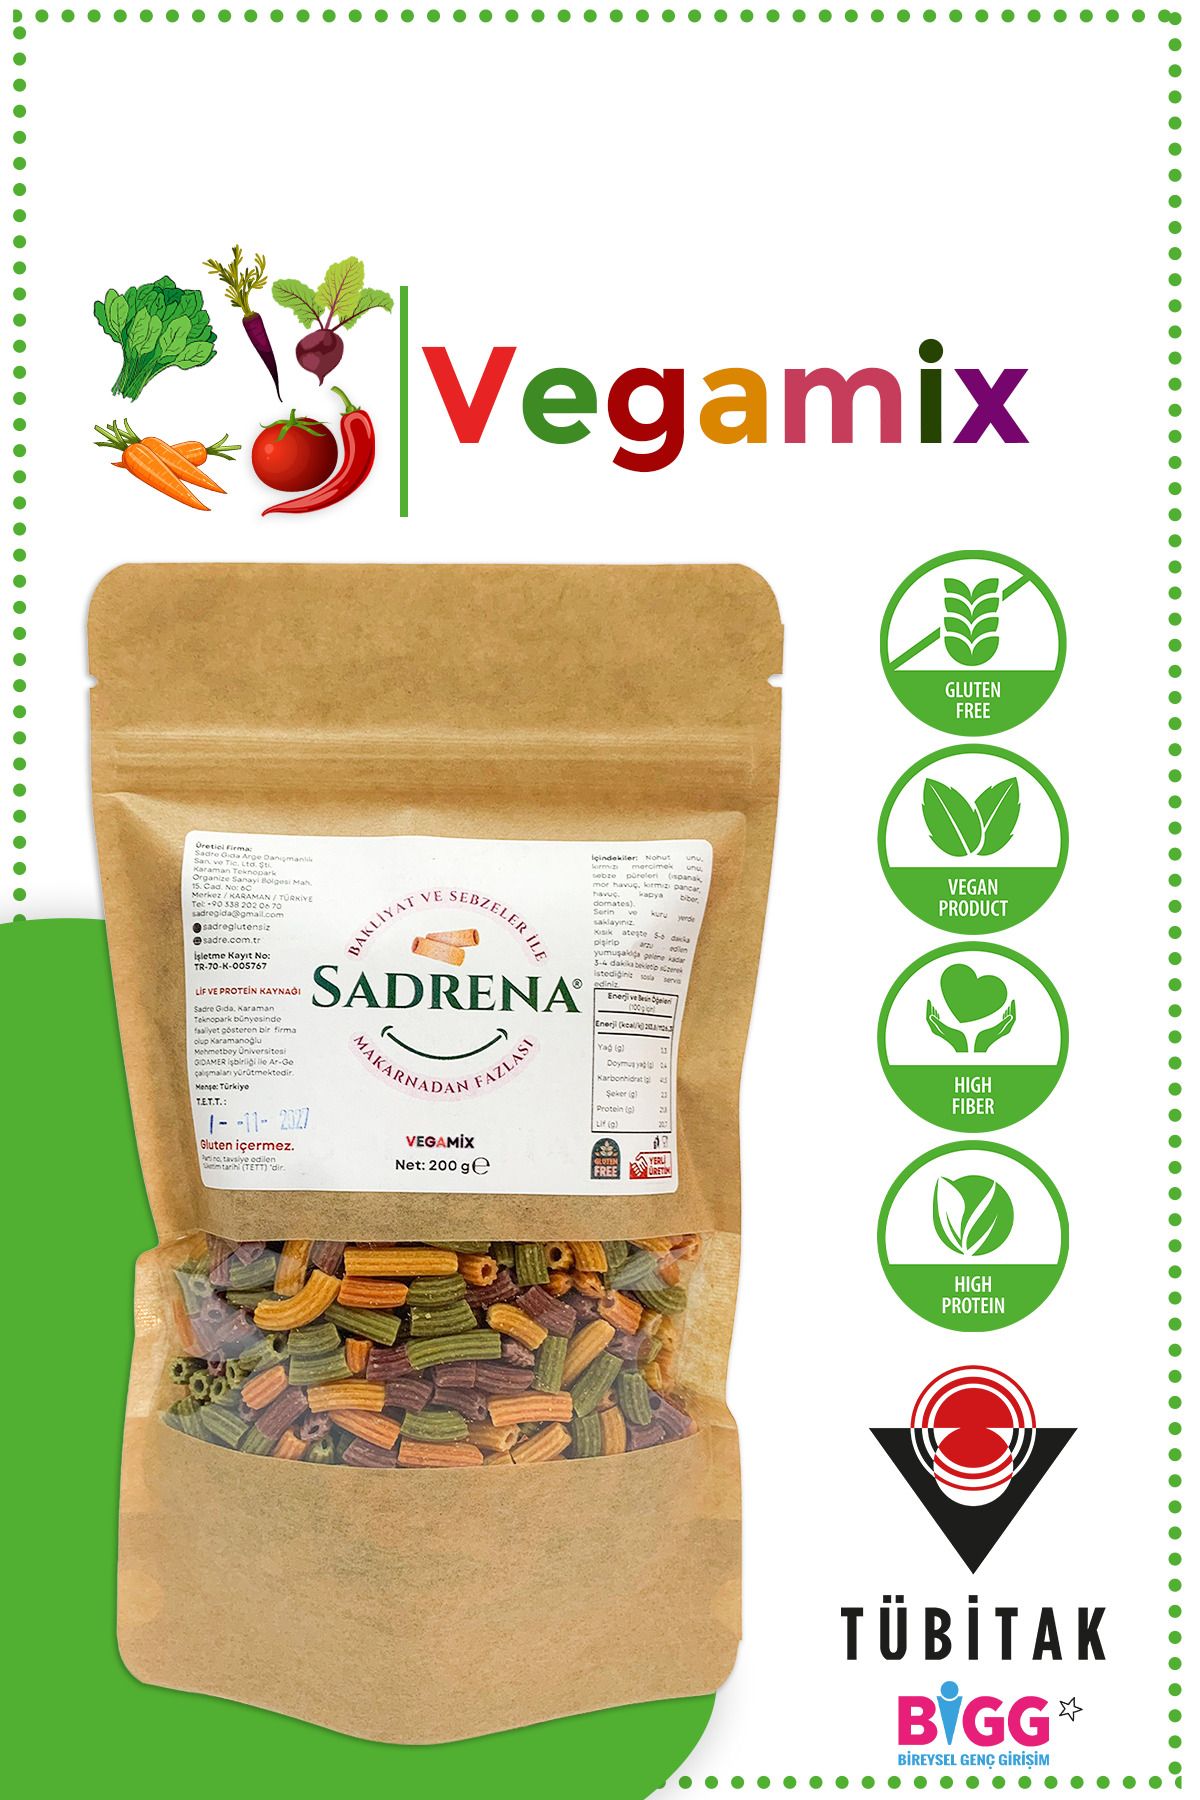 Sadrena Glutensiz & Vegan Yüksek Protein ve Lif İçeren Vegamix Makarna 200gr.